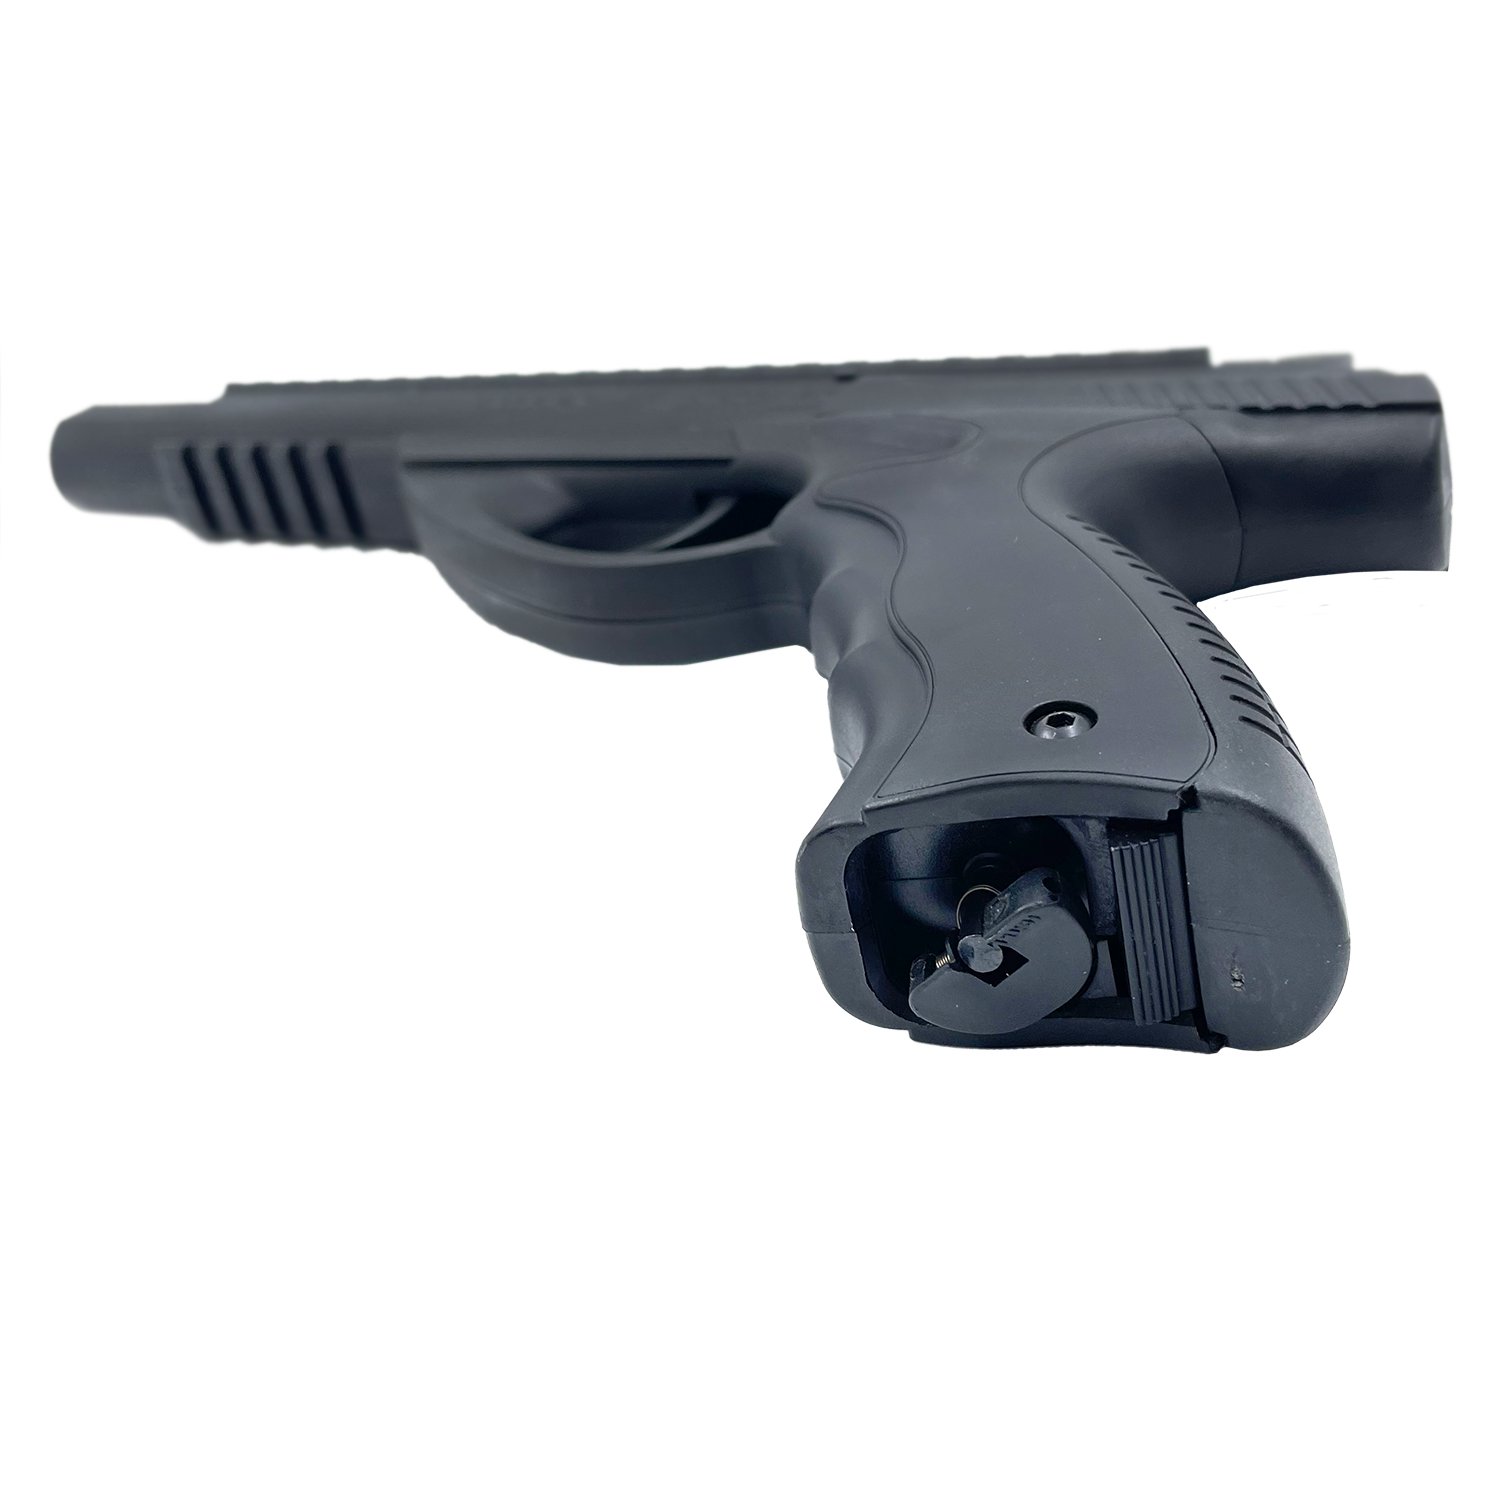 Пистолет пневматический Umarex Morph Pistol, кал. 4,5 мм